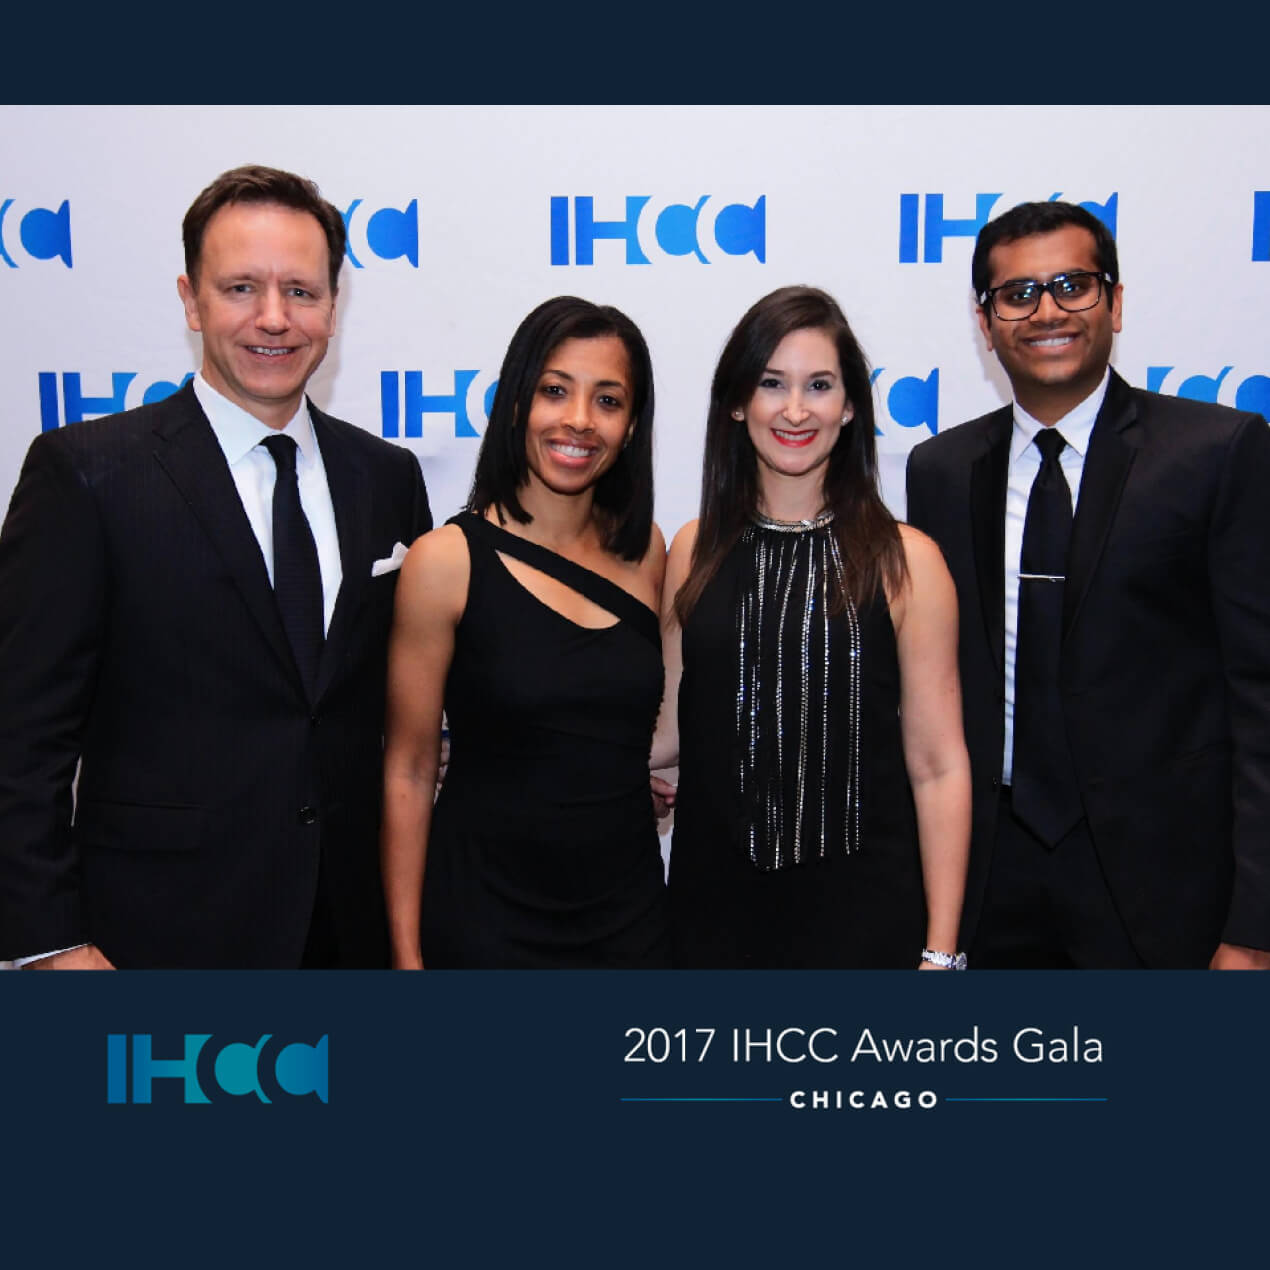 The 2017 IHCC Awards Gala